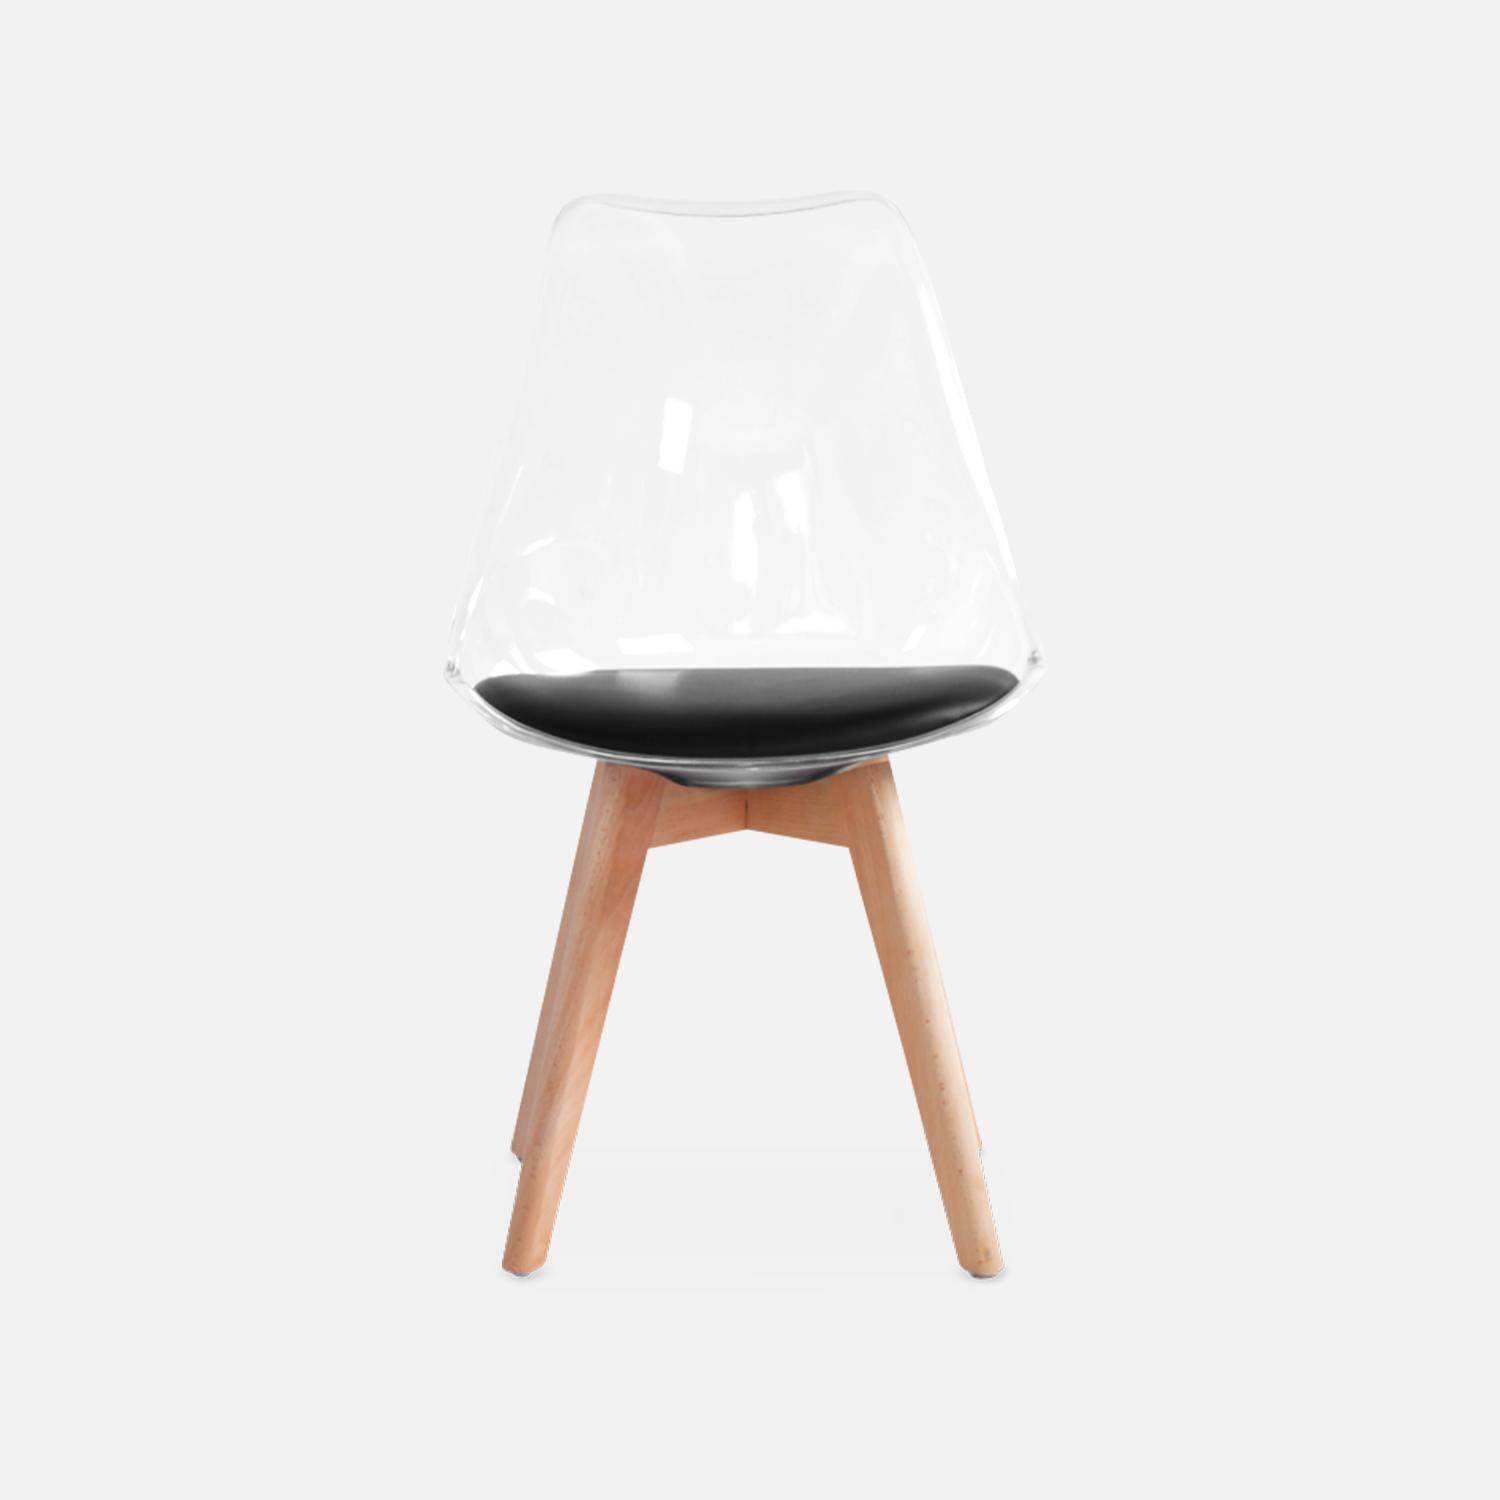 Juego de 4 sillas escandinavas - Lagertha - patas de madera, asientos individuales, cojín negro, carcasa transparente  Photo5